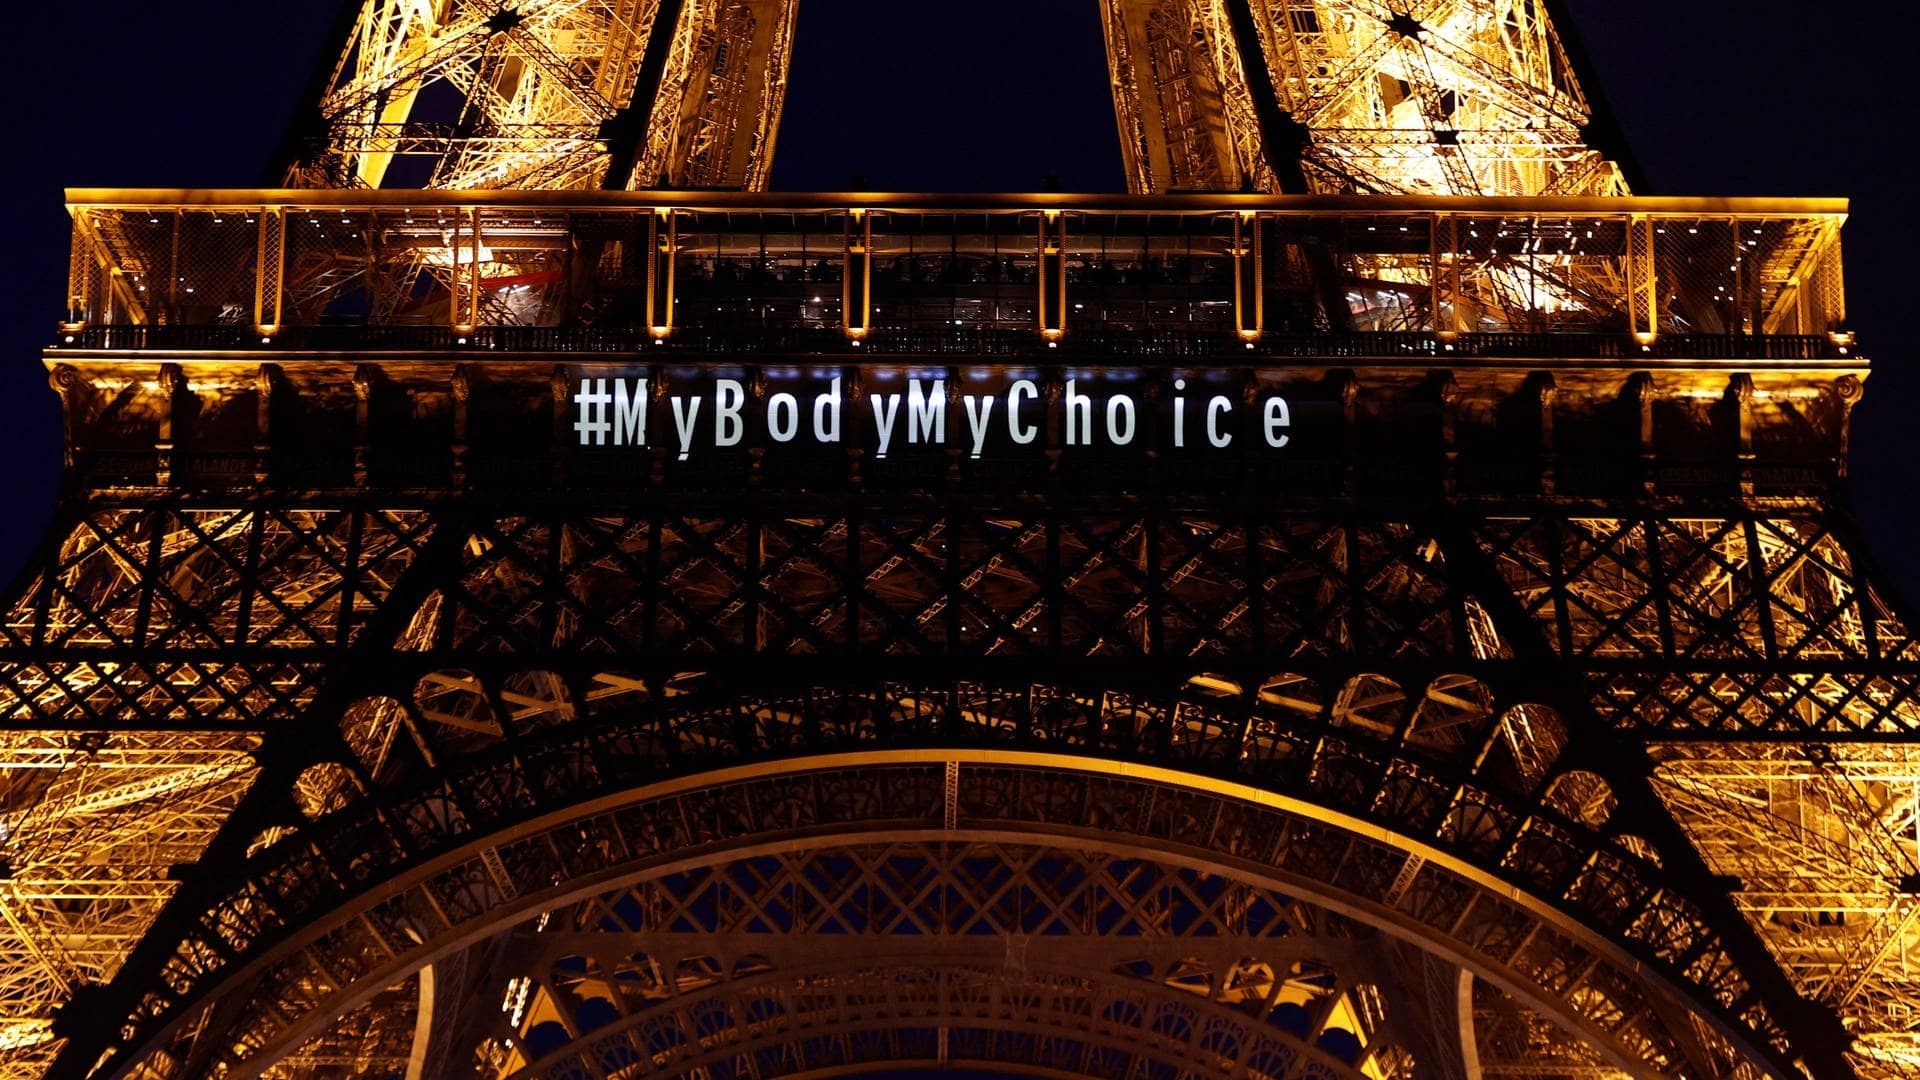 Auf dem Pariser Eiffelturm steht: #MyBodyMyChoice - eine Reaktion auf die Entscheidung, dass das Recht auf Abtreibung in der Verfassung von Frankreich verankert wird